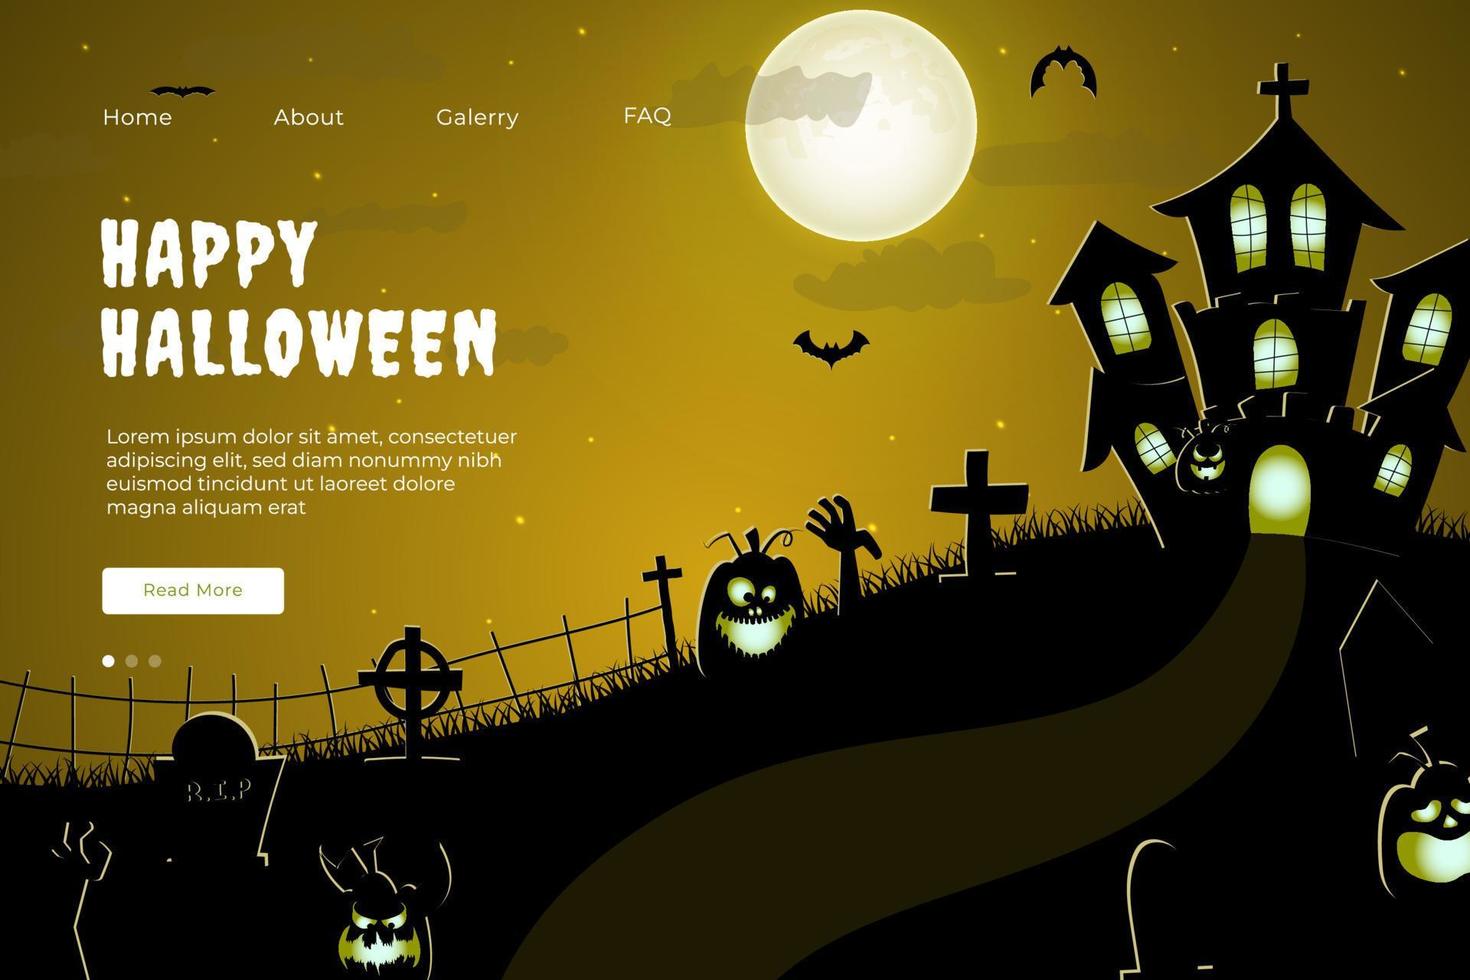 contento Halloween sito web design. piatto Halloween atterraggio pagina modello con sagome di zucche, pipistrelli, e frequentato Casa vettore